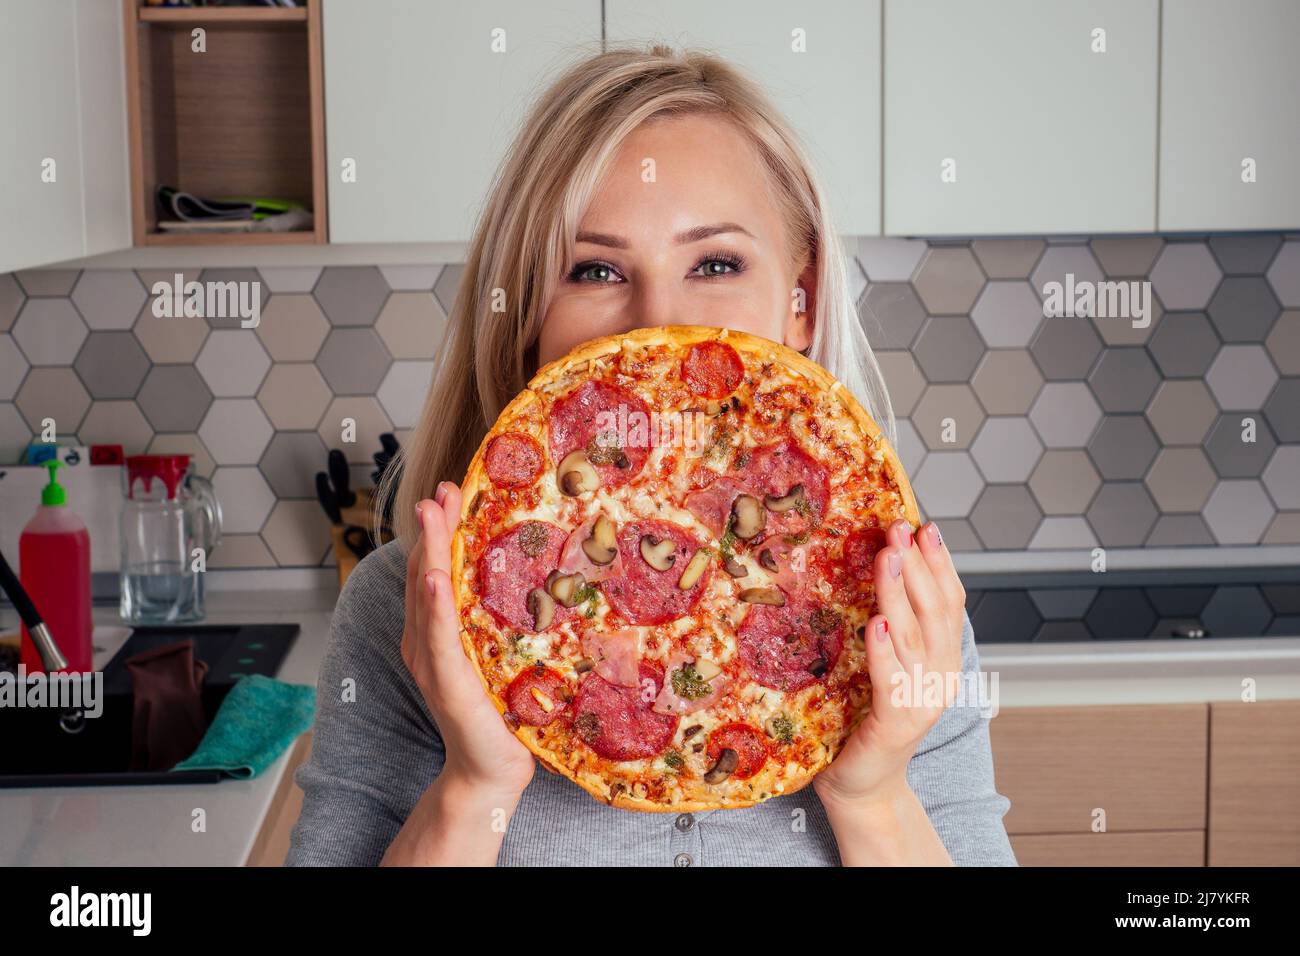 Frau öffnet Öfen und schneidet Pizza mit Tomaten, Oliven, Pilzen und Käse Wurst Stockfoto